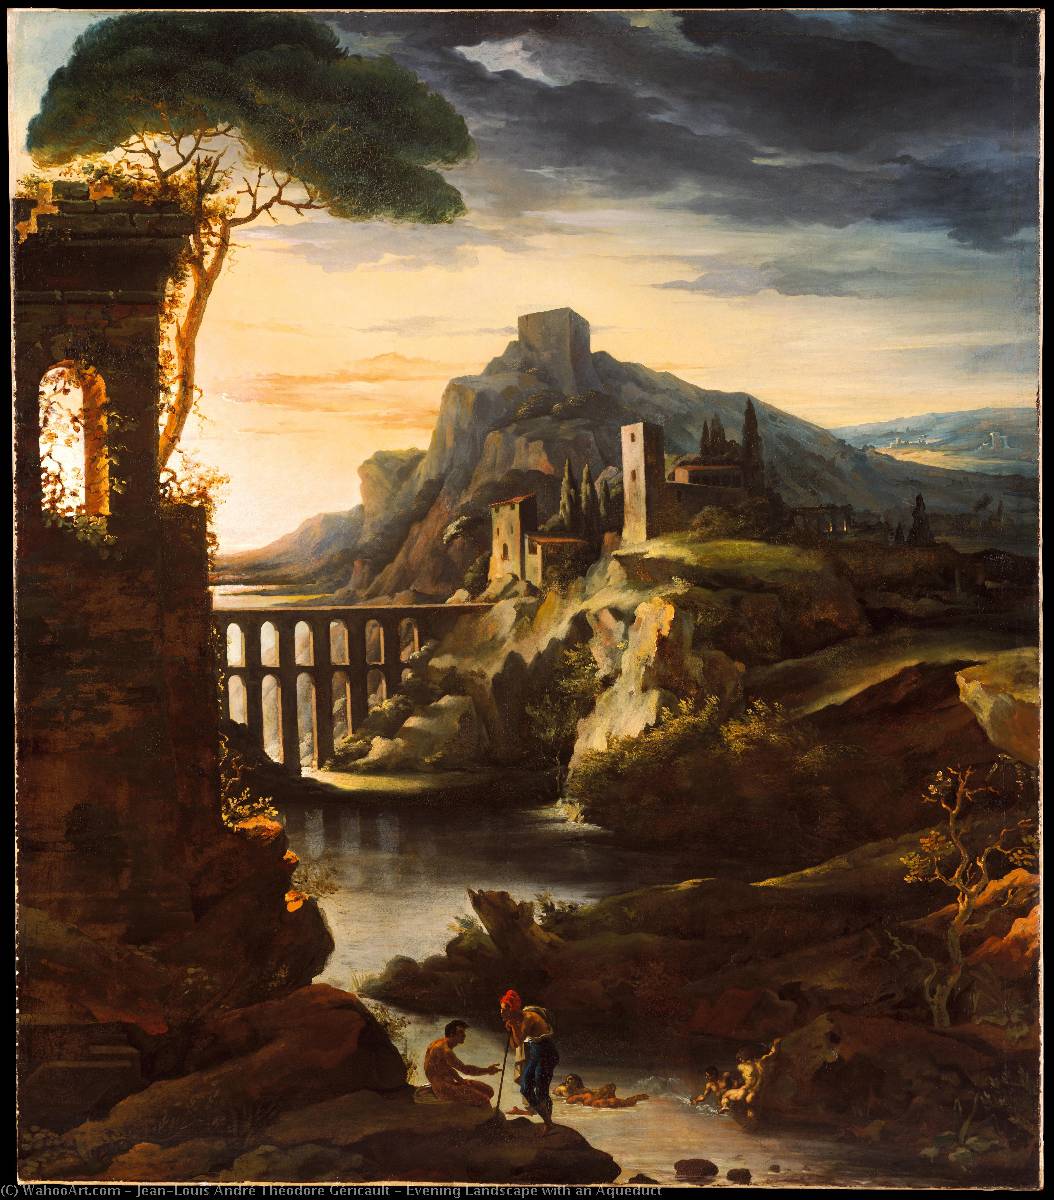 Wikioo.org - Die Enzyklopädie bildender Kunst - Malerei, Kunstwerk von Jean-Louis André Théodore Géricault - abend landschaft mit  ein  Aquädukt